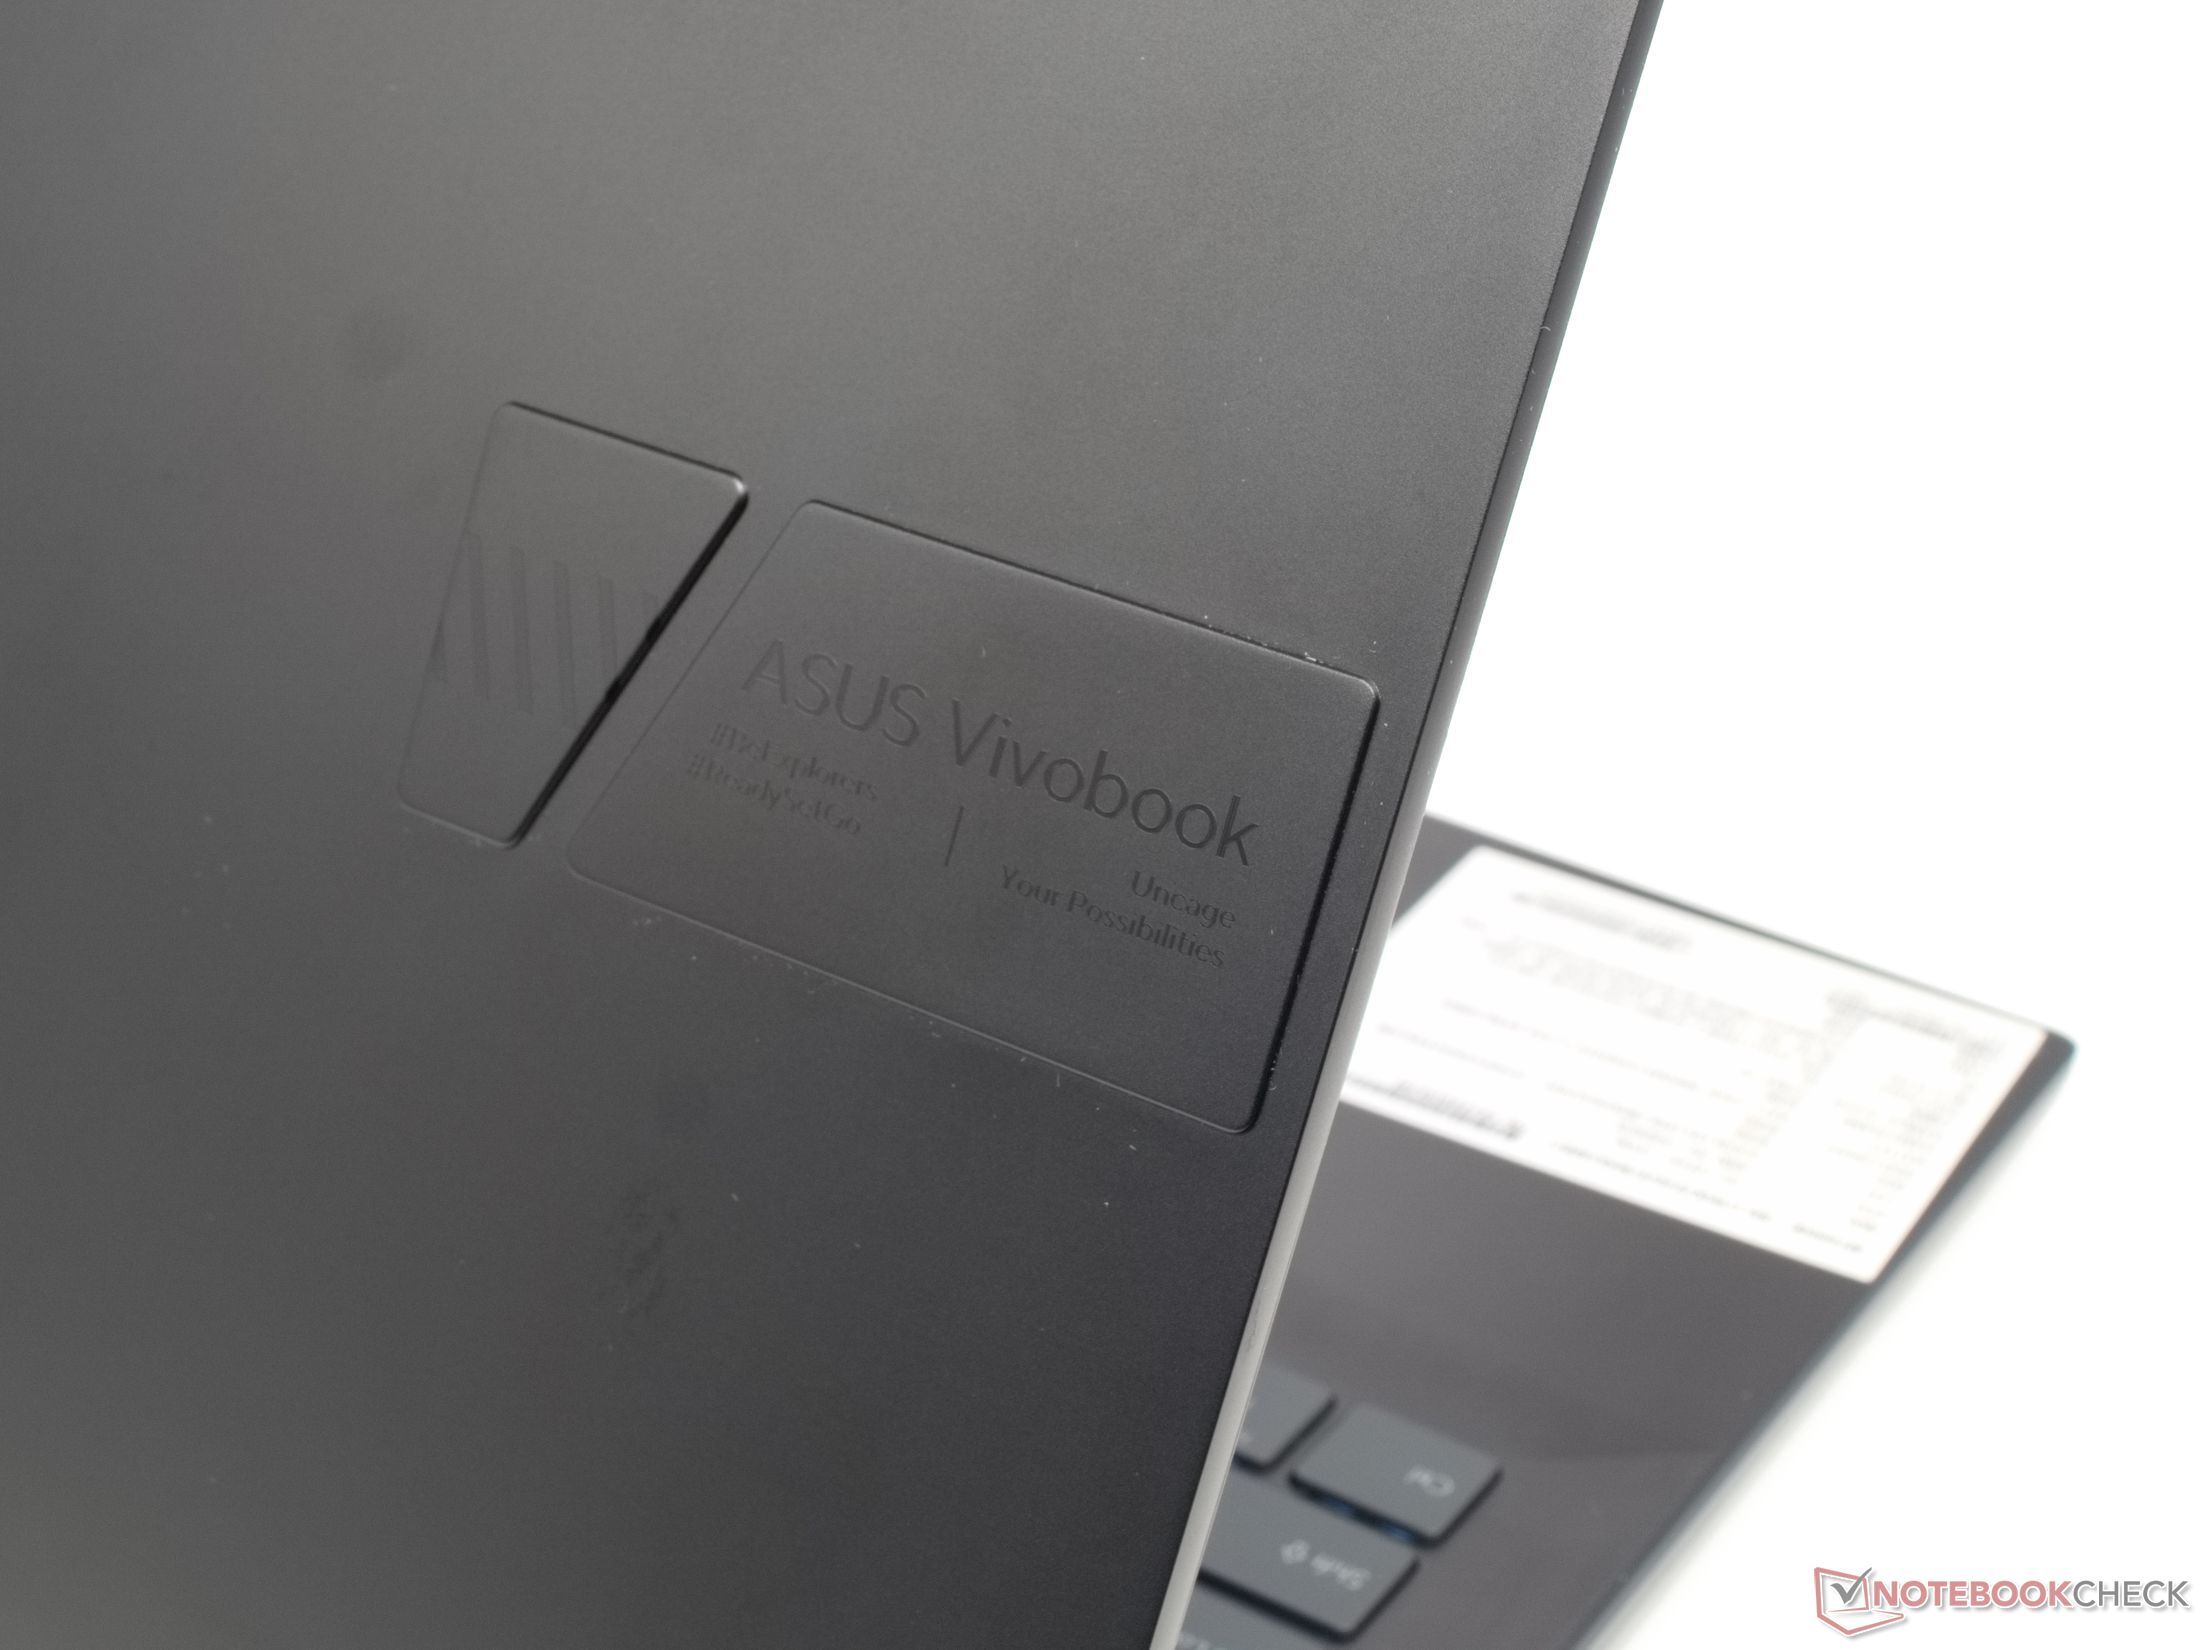 Tests Asus im - Leistung, und Ausdauer Vorabtest: Pro OLED- Notebookcheck.com Display Vivobook starkes 16X